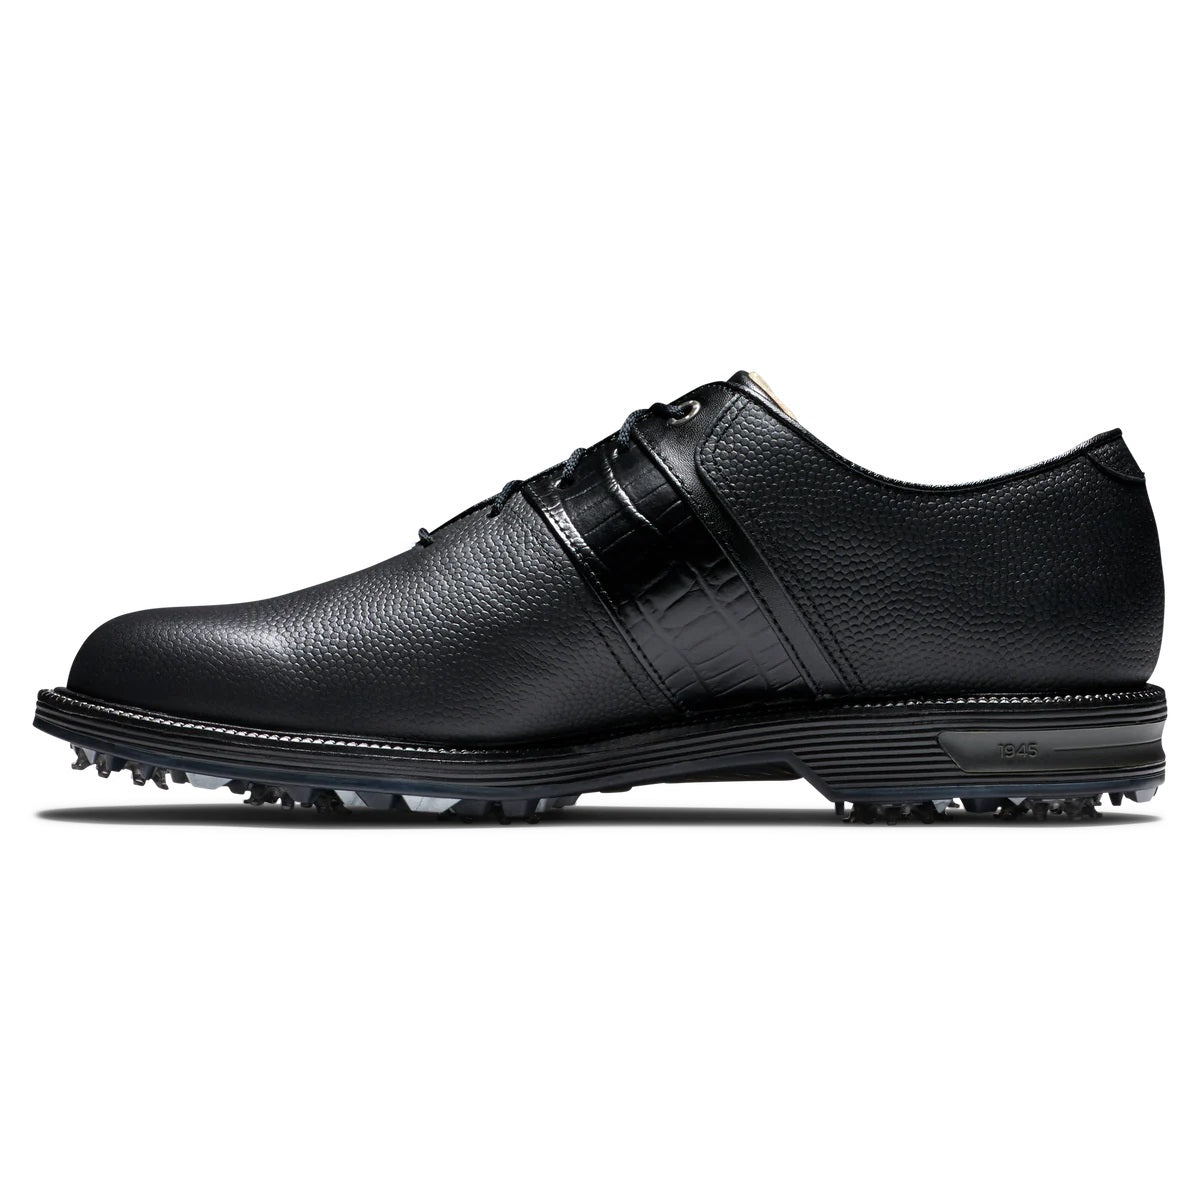 FootJoy Premiere Series Packard Mens Golf Shoes Black 53924